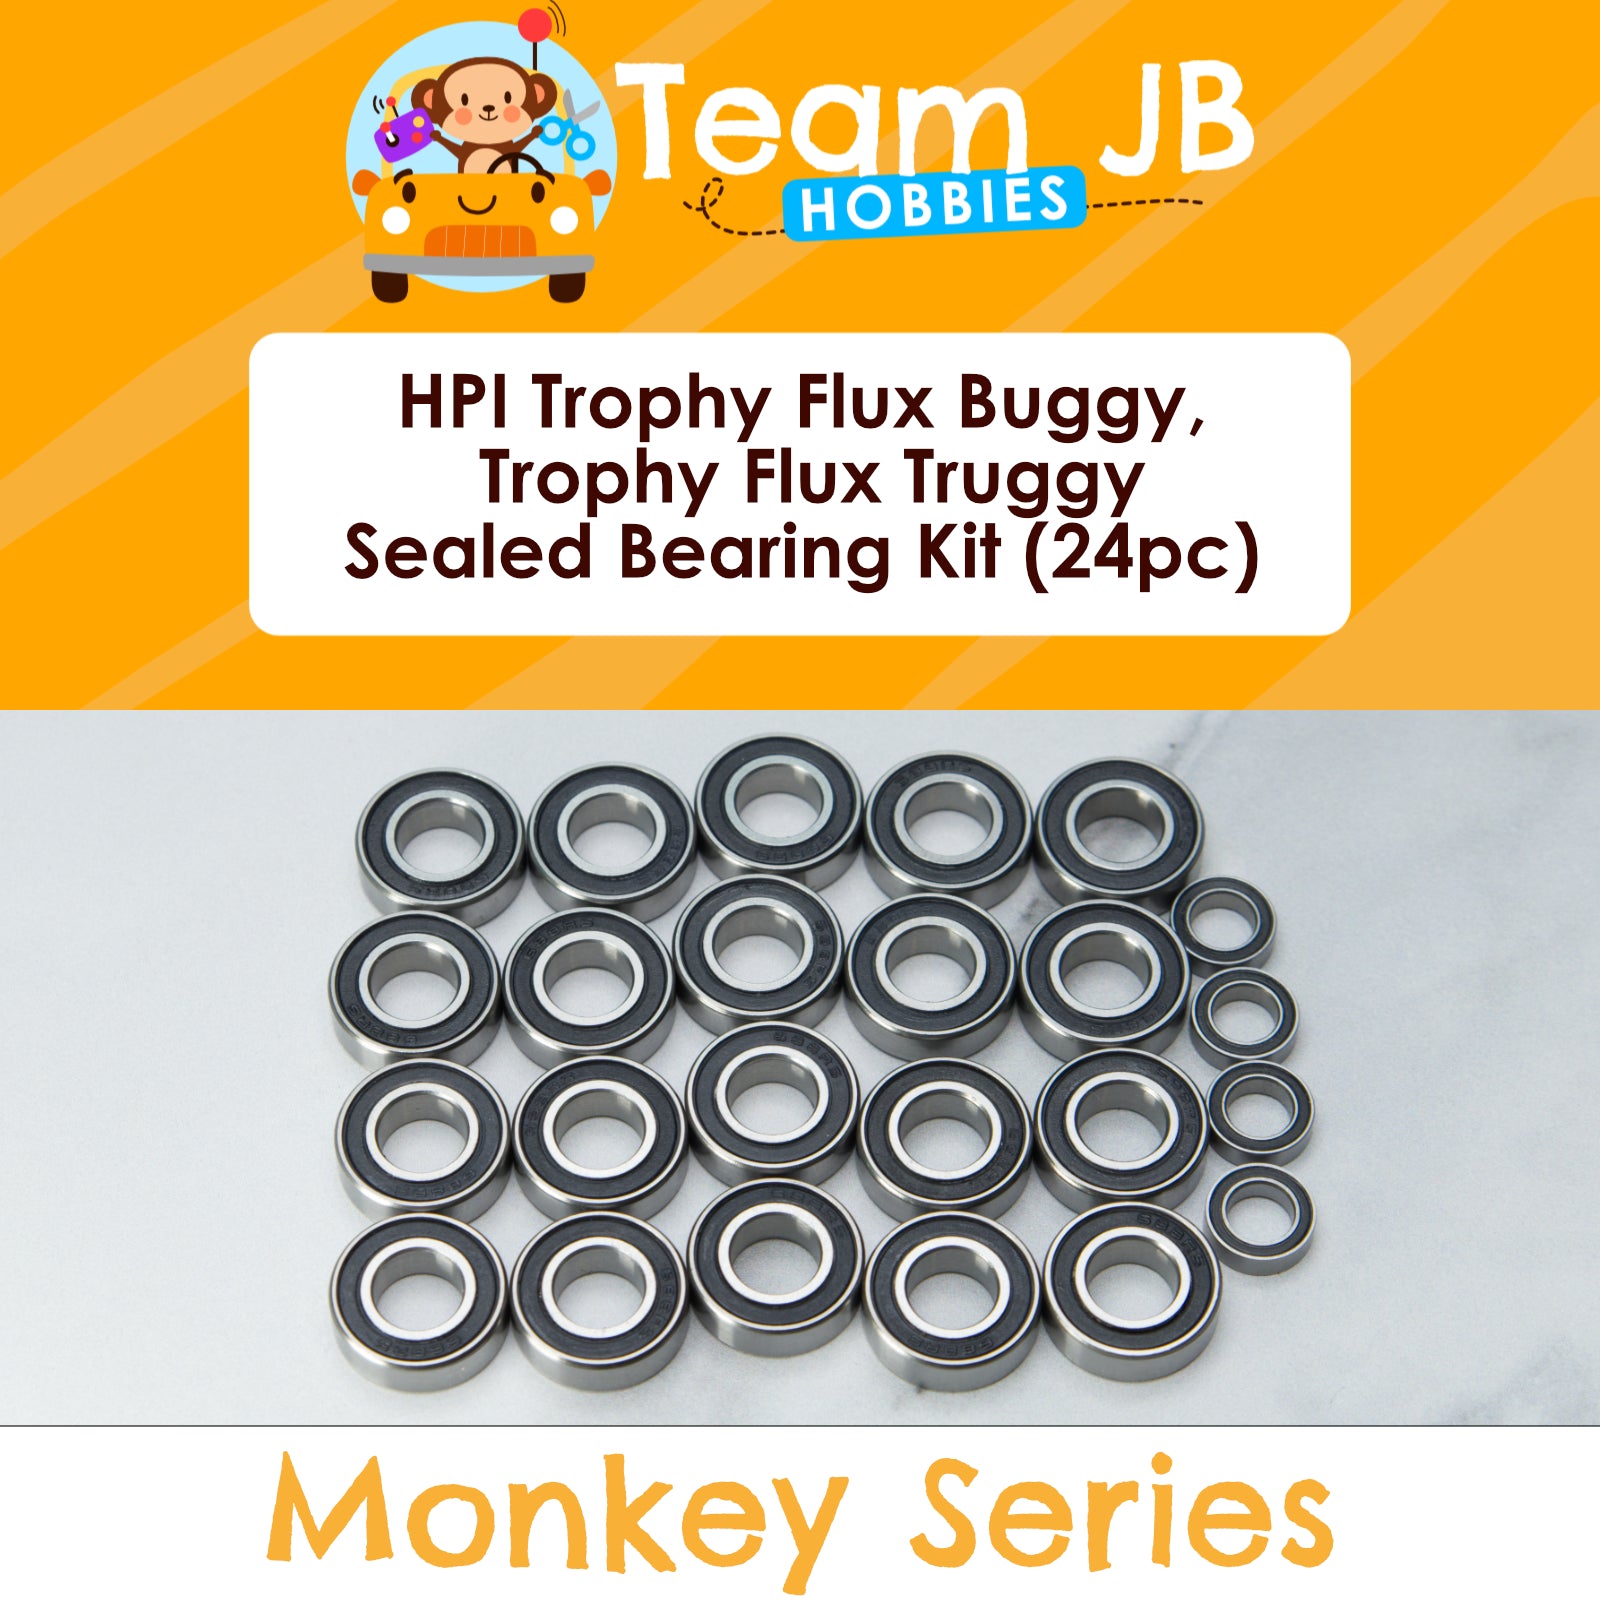 HPI Trophy Flux Buggy, Trophy Flux Truggy - Sealed Bearing Kit